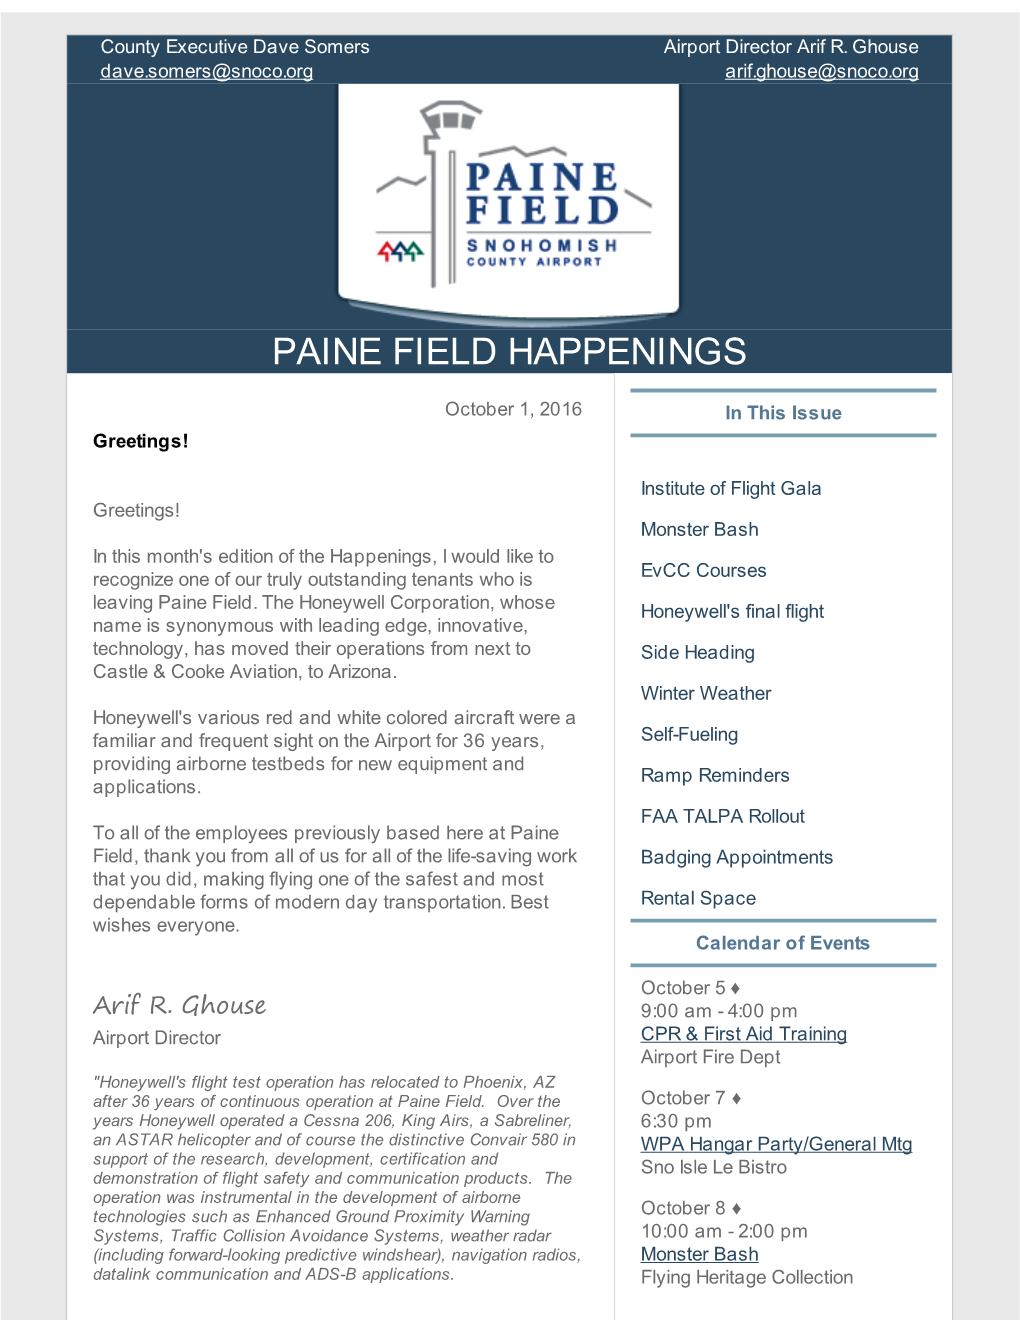 Paine Field Happenings